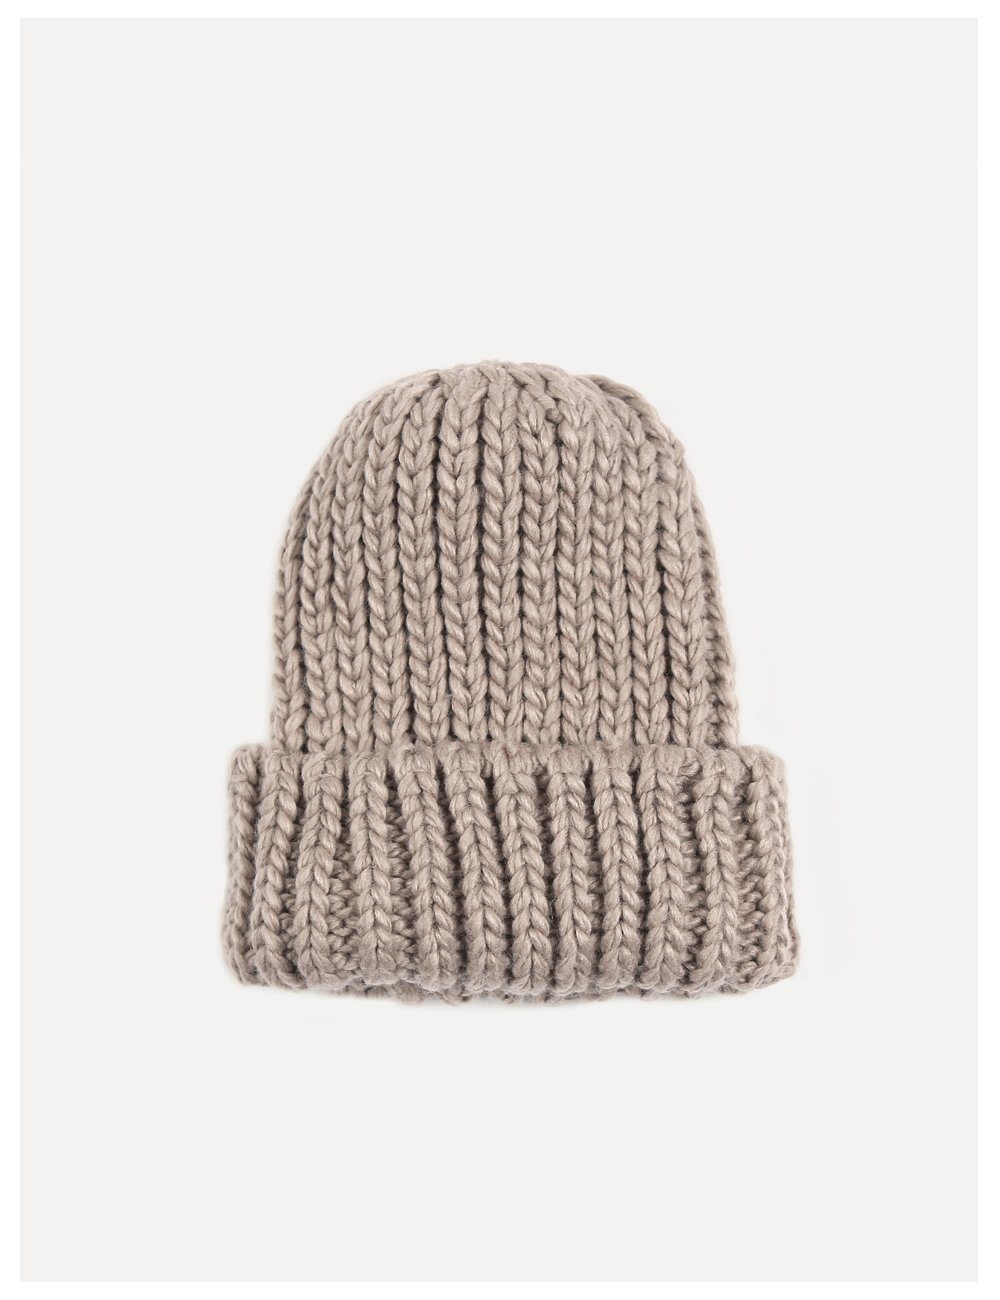 So Heavy knit Hat_Beige